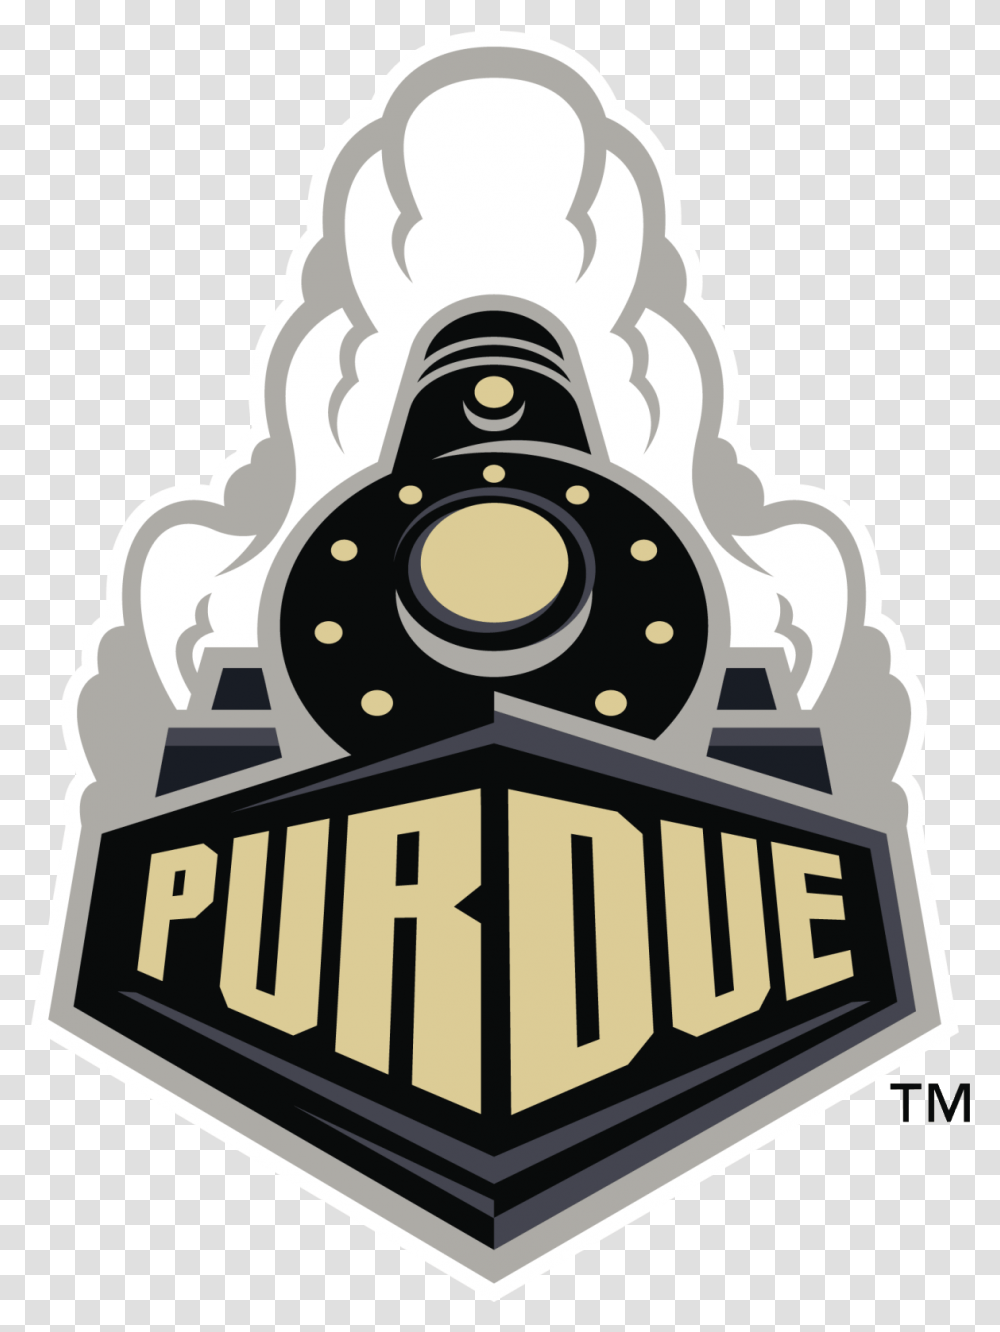 Purdue Boilermakers Logo Purdue Boilermakers, Symbol, Trademark, Badge, Emblem Transparent Png